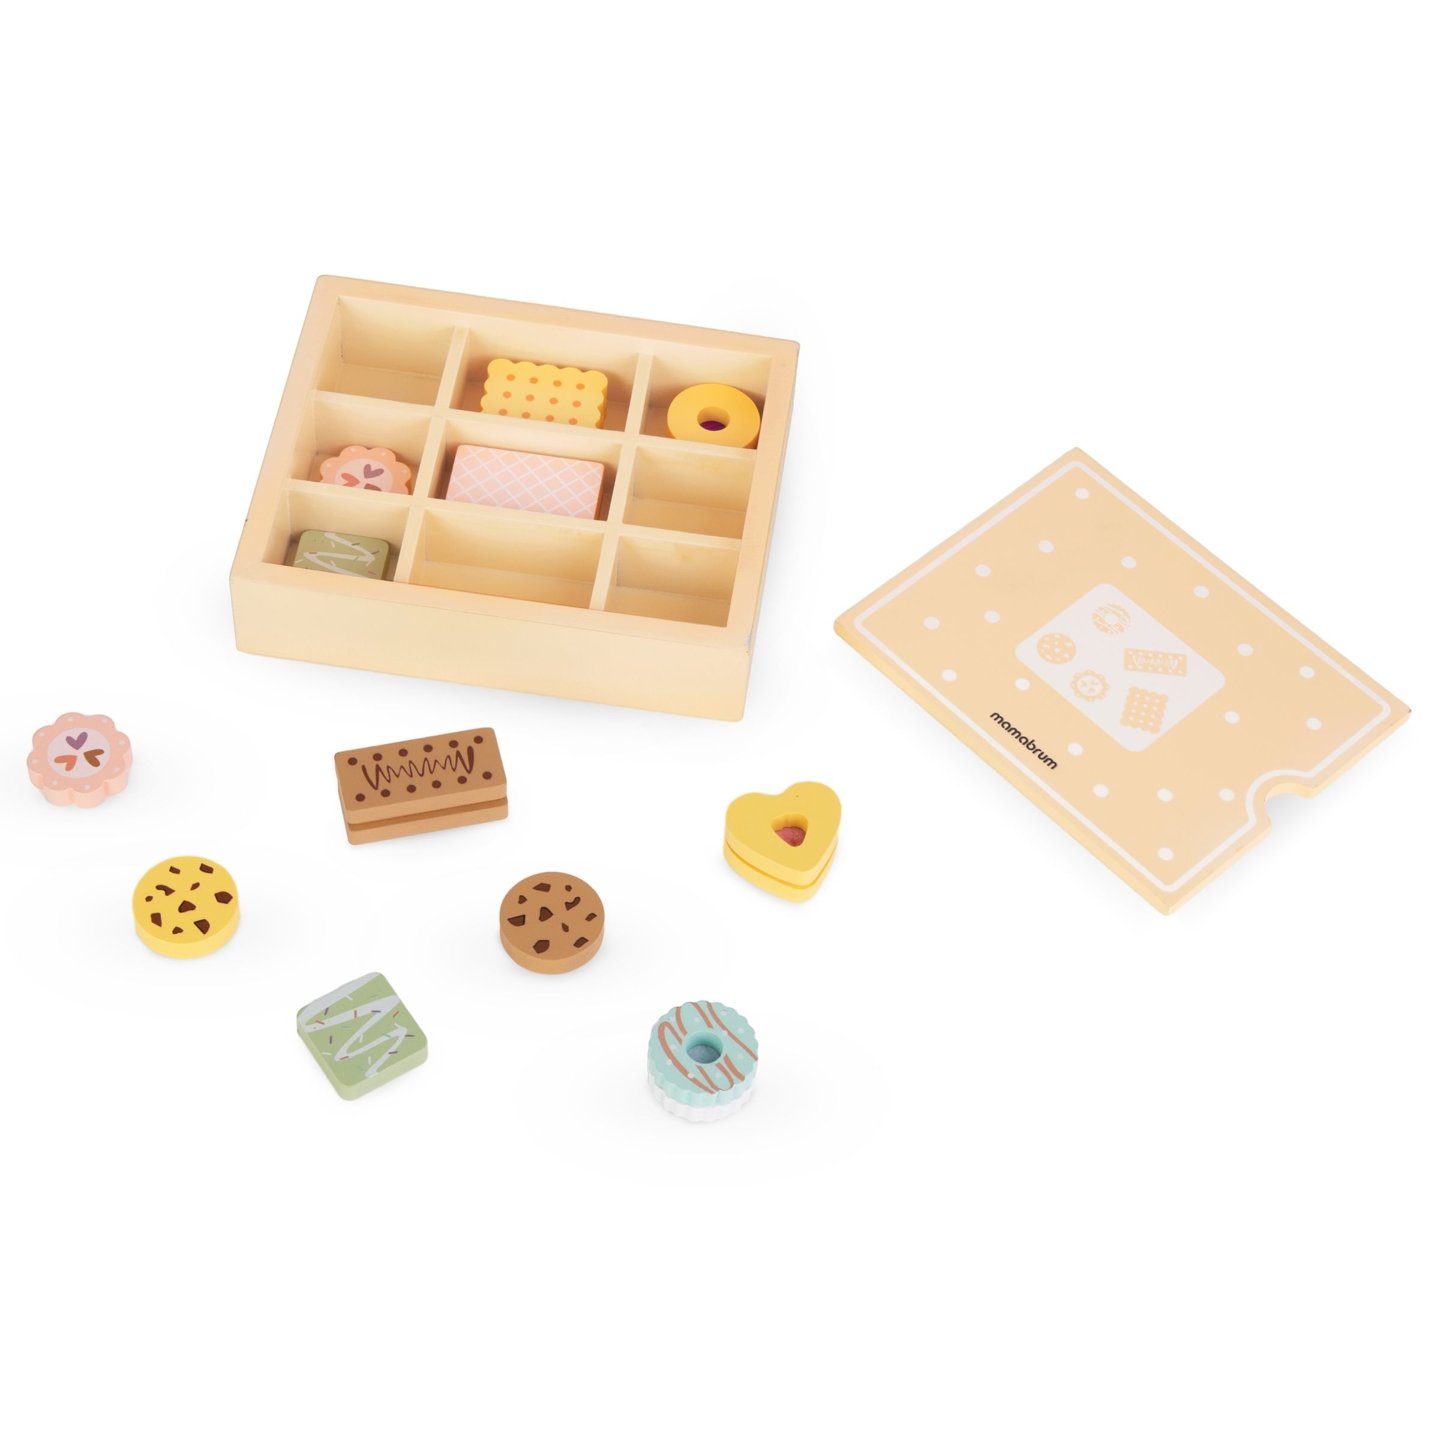 Drewniane pudełko z ciastkami - zestaw dla dzieci